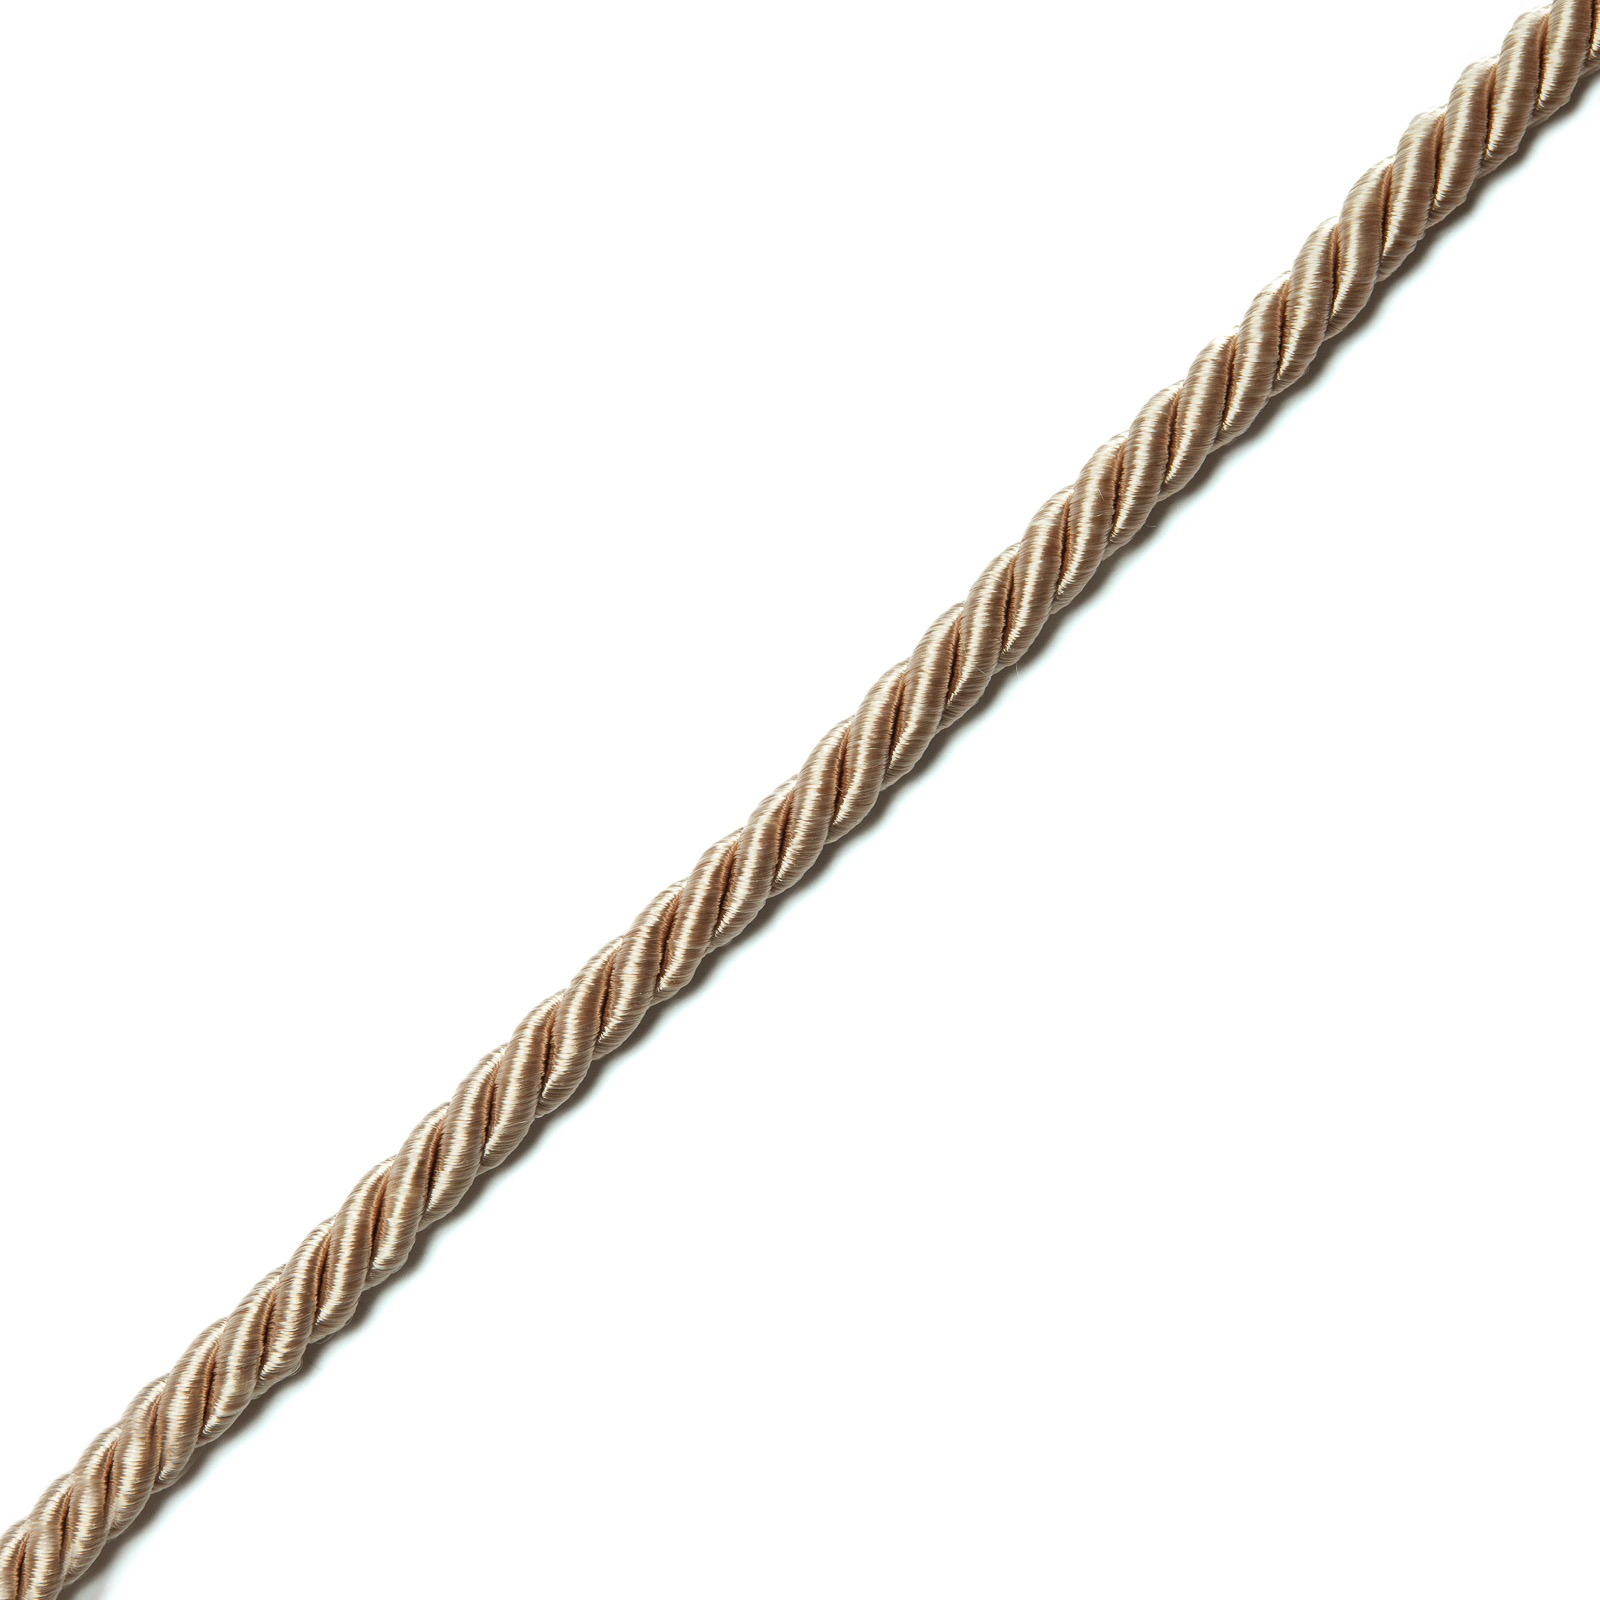 Braided Ropes, Rayon Ropes